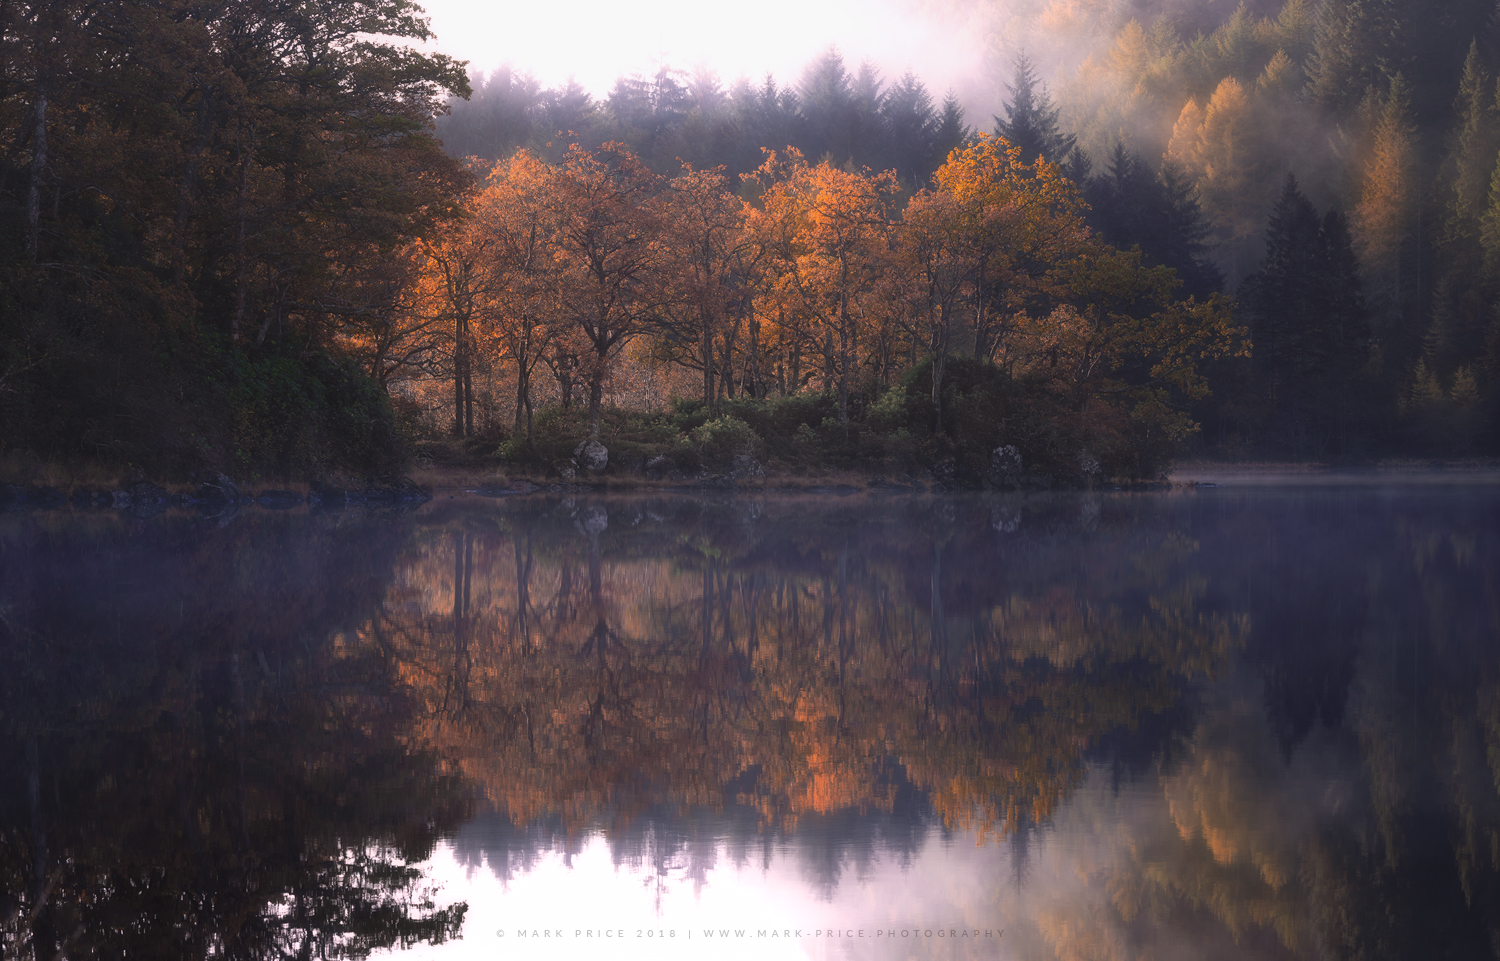 Autumn in full flow at a quiet Scottish loch